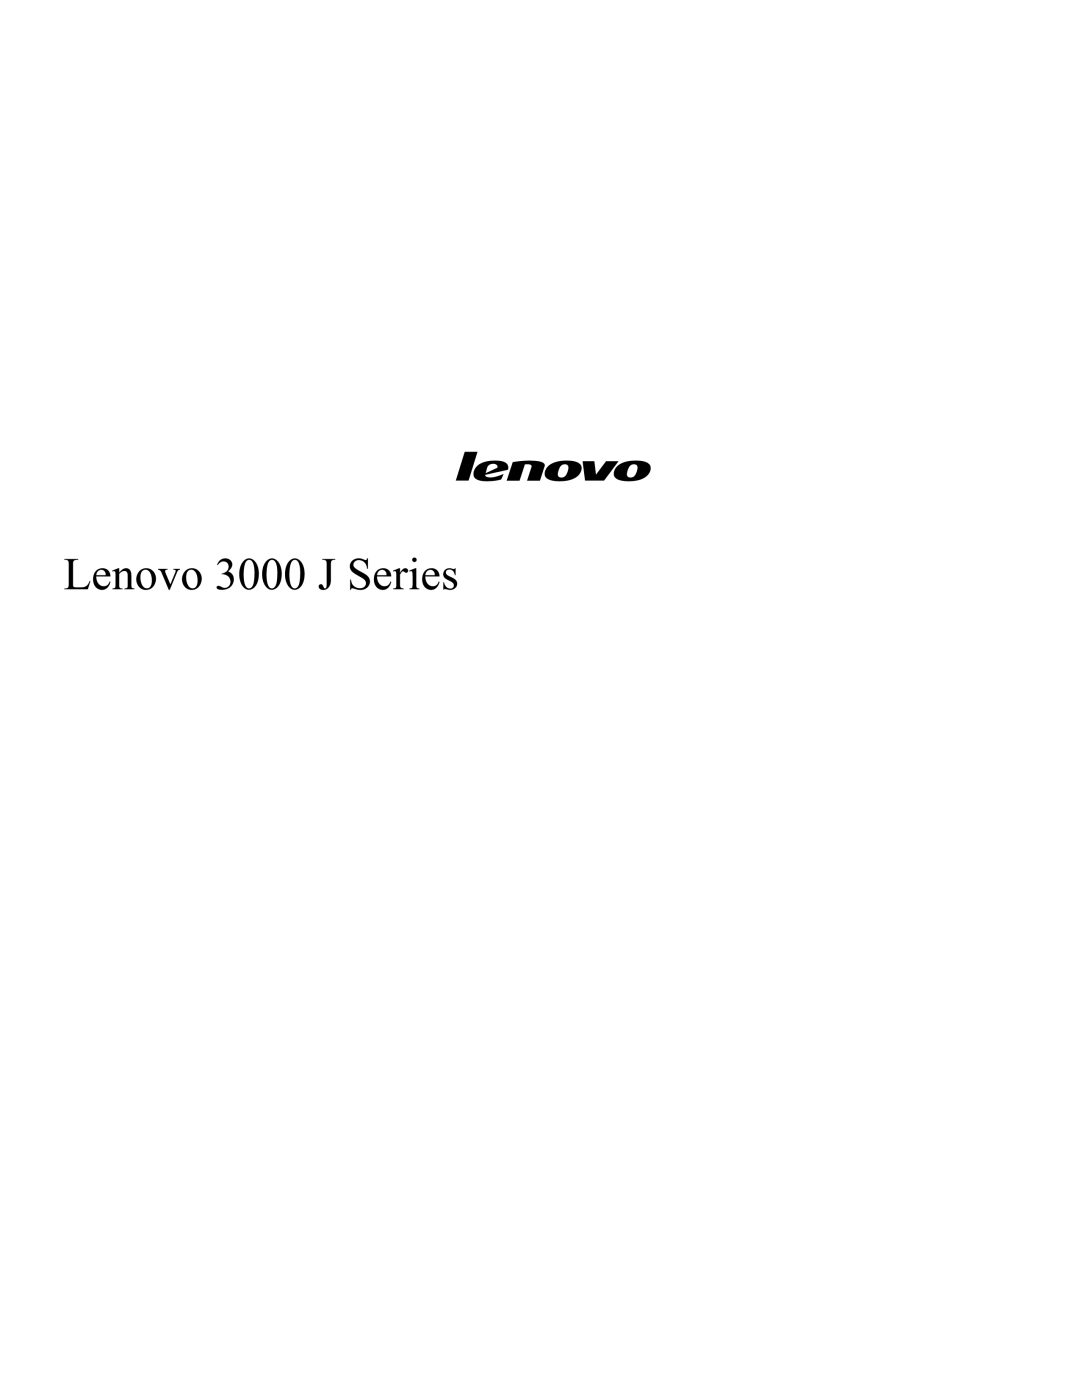 Lenovo manual Lenovo 3000 J Series 